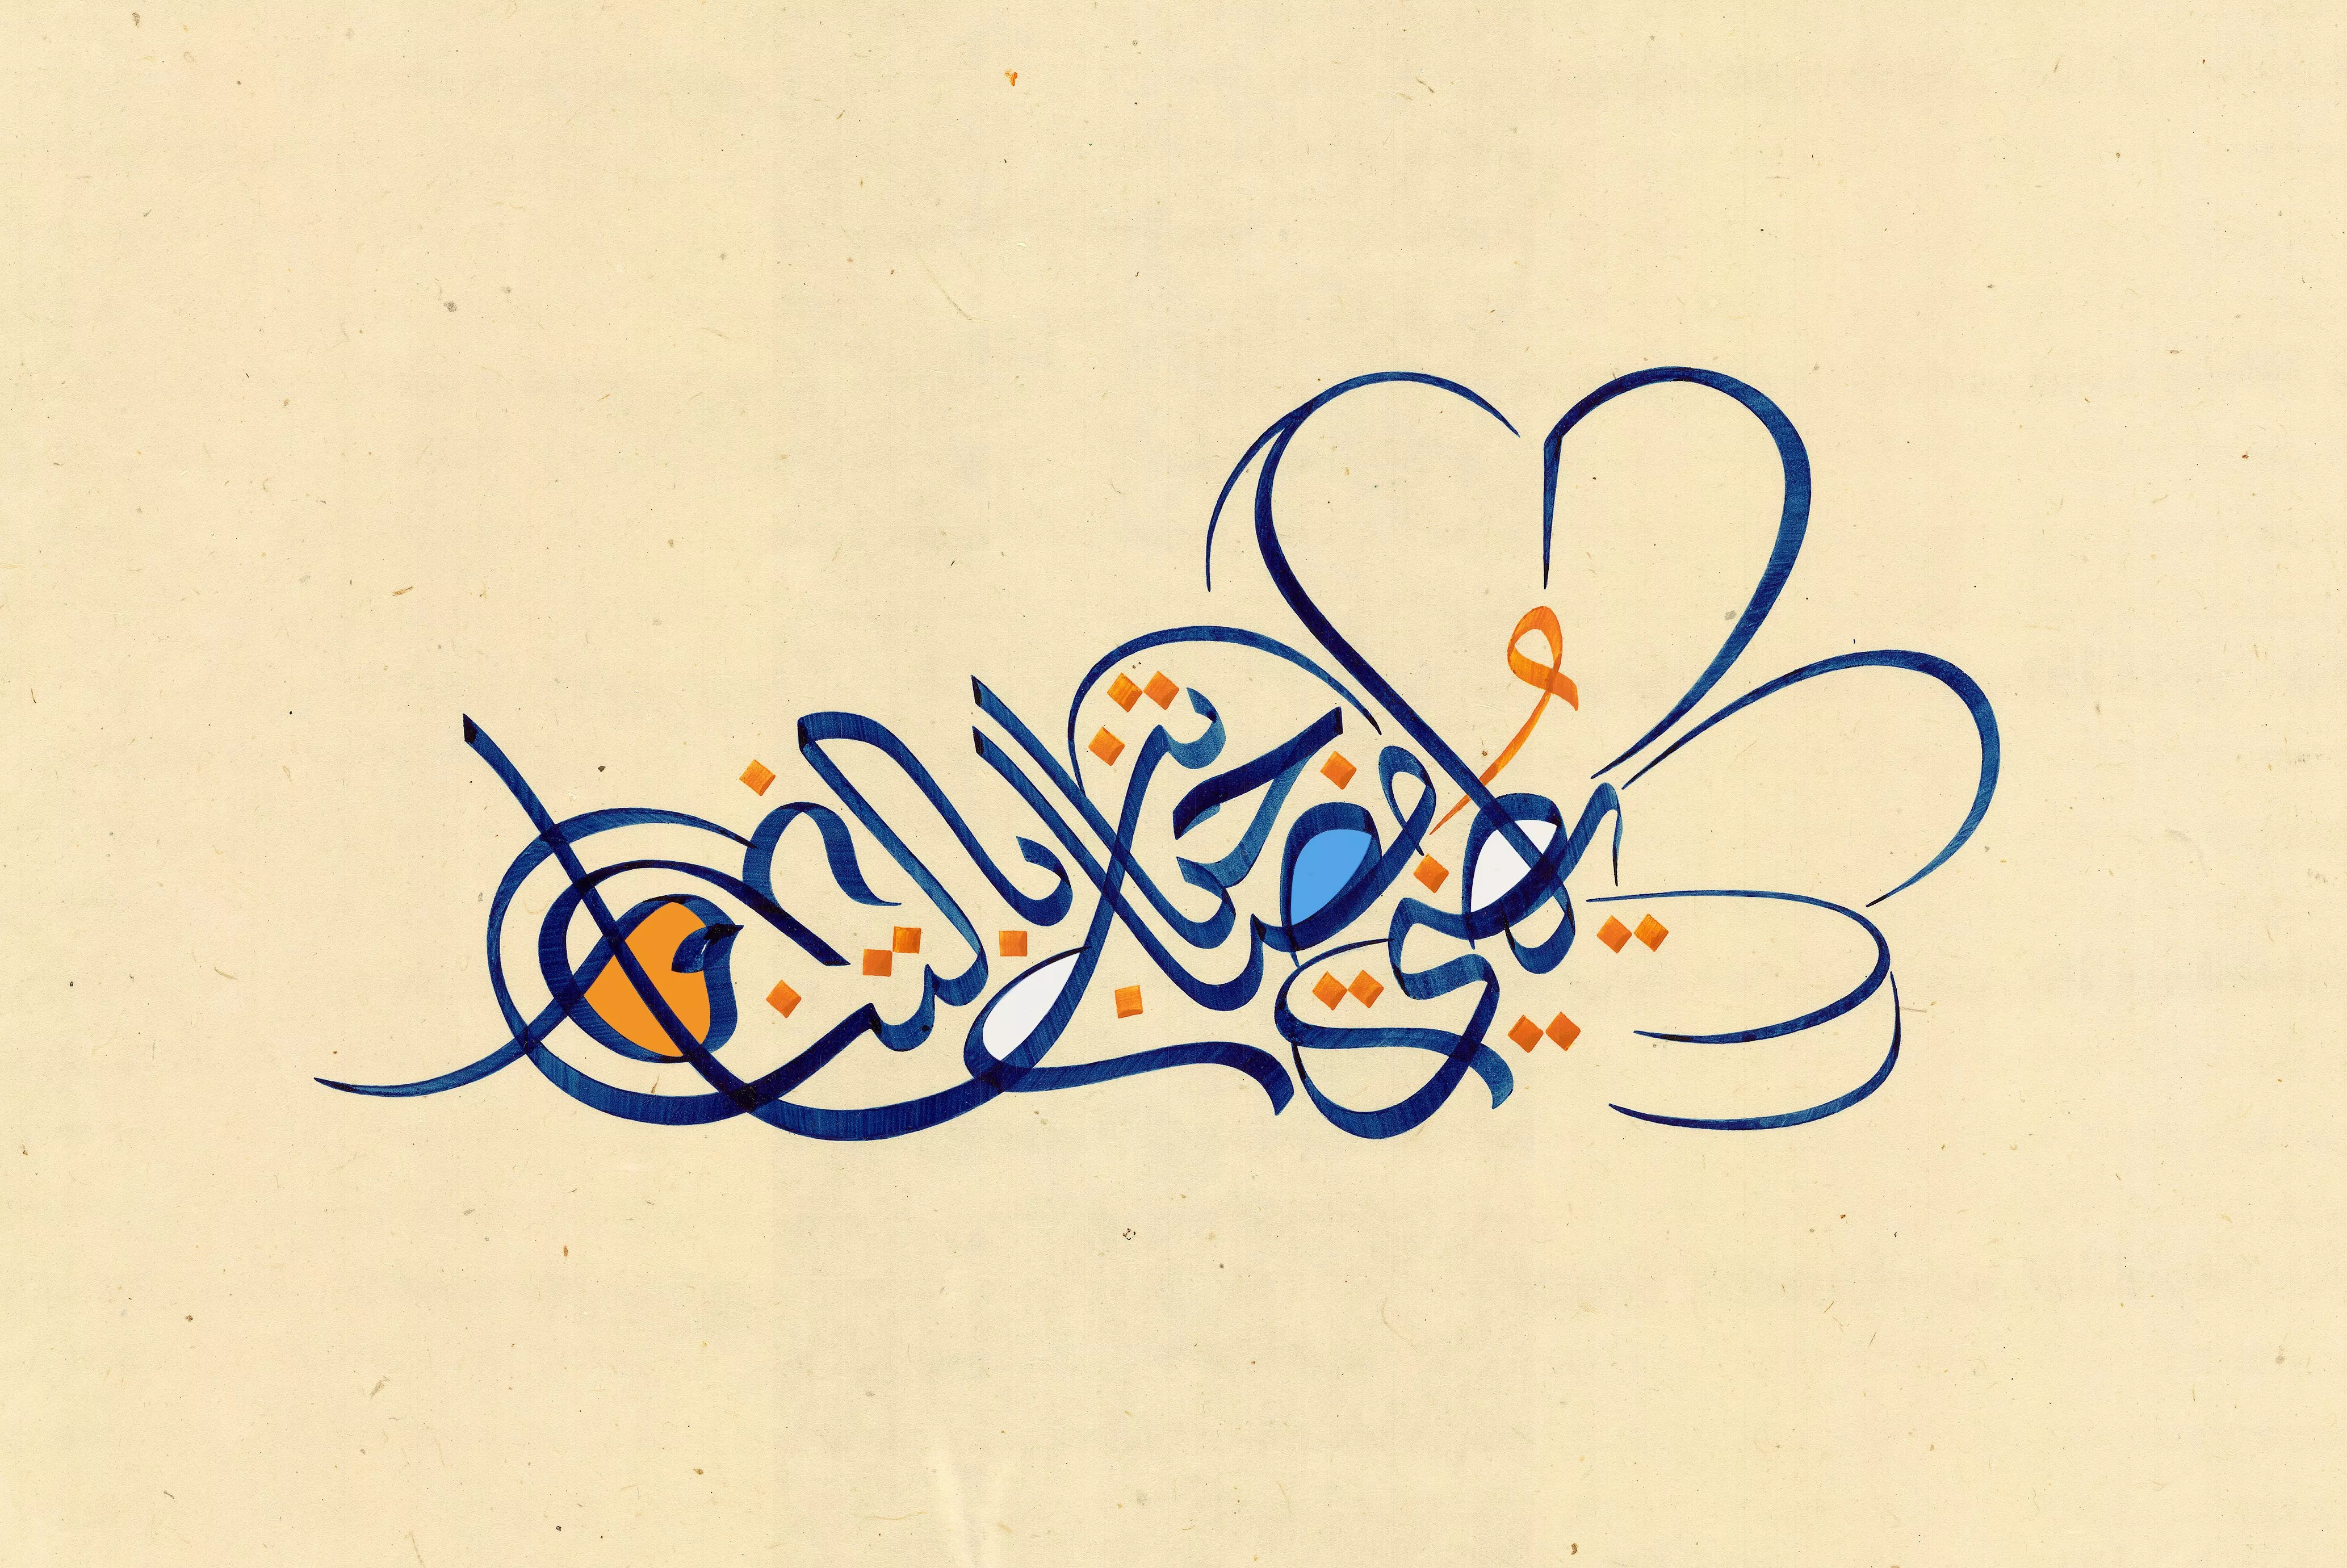 دار فان كليف أند آربلز تشارك رسالة تناغم الأزهار مع فنان الخط العربي ماجد اليوسف لشهر رمضان